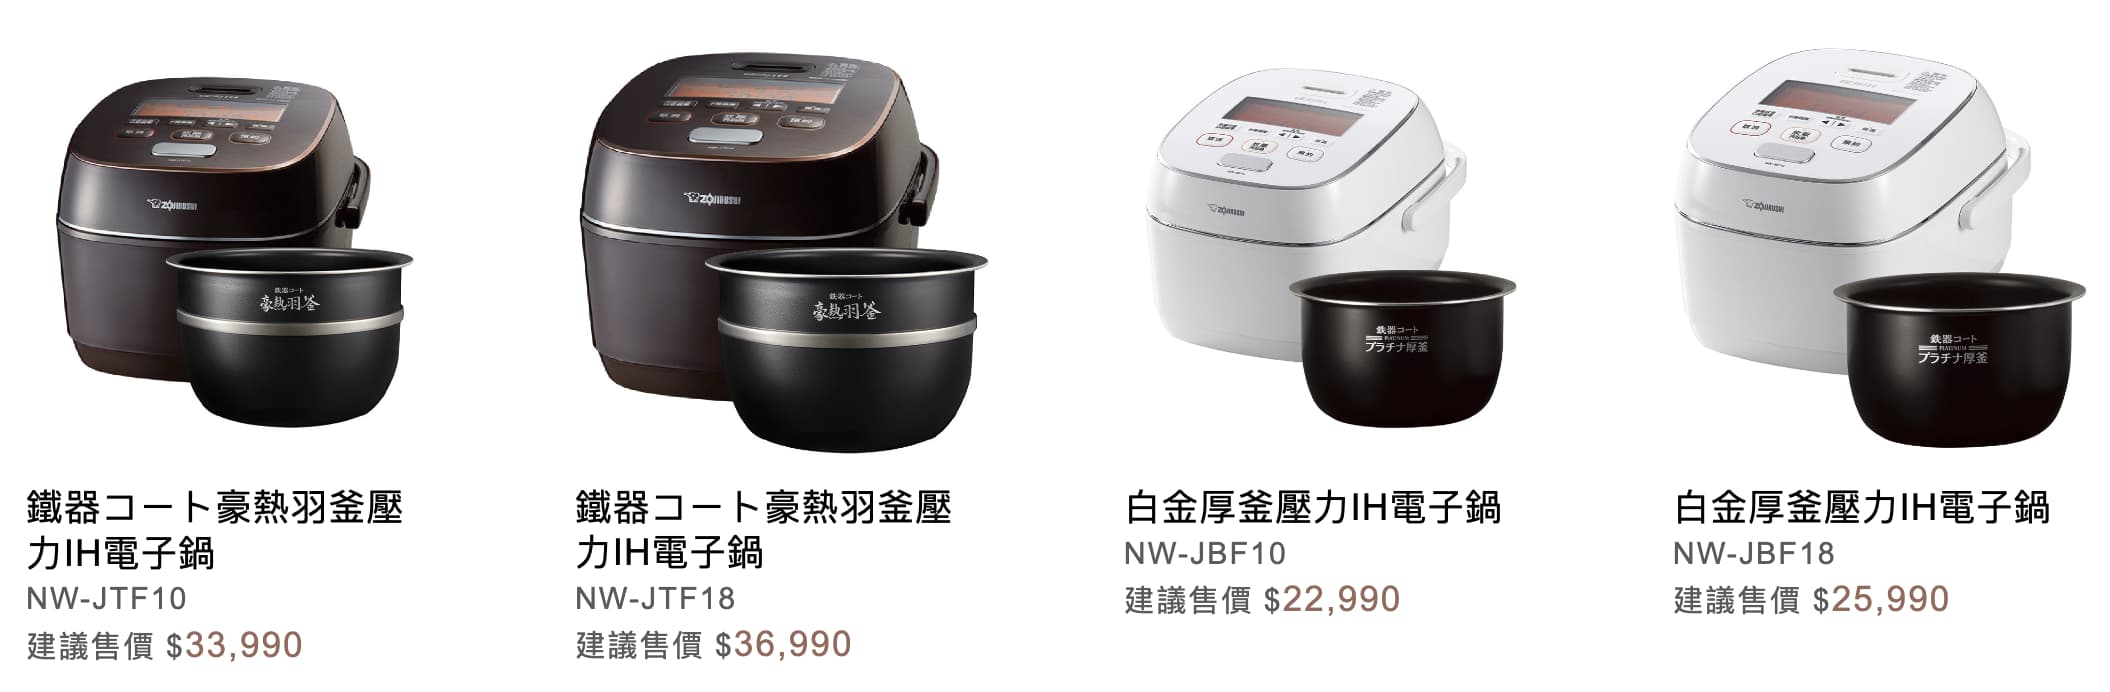 日本電子鍋與台灣售價差異